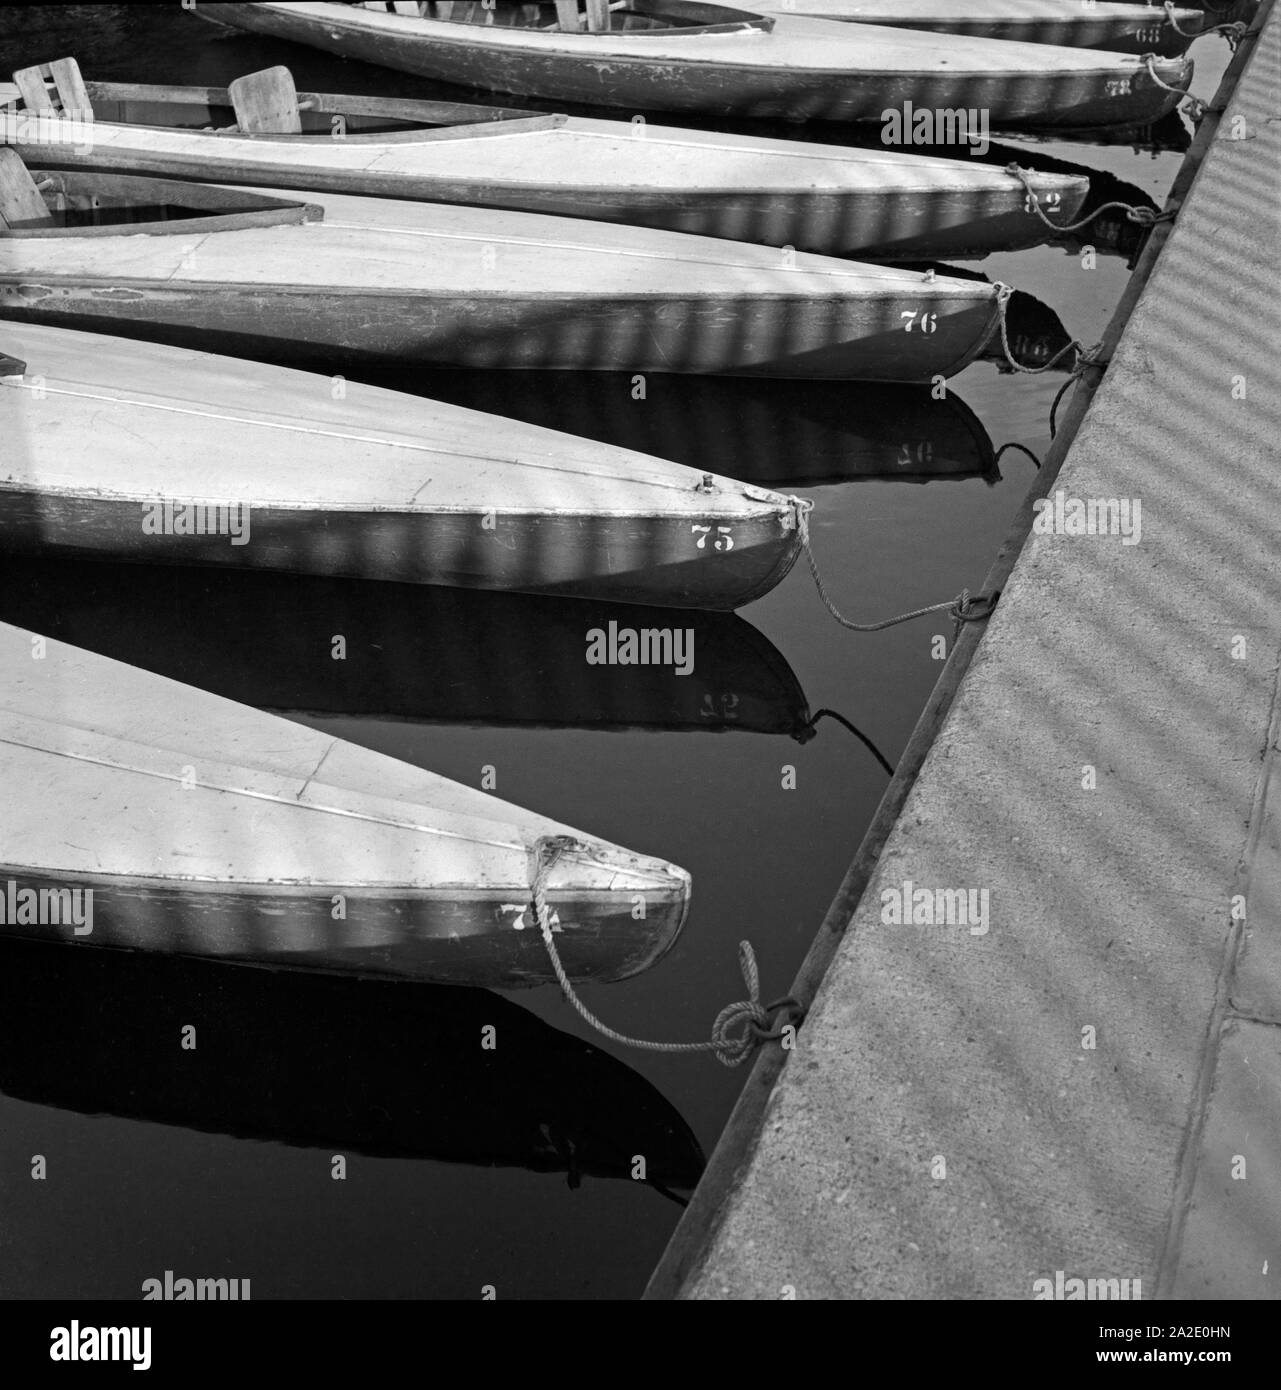 Paddelboote warten am Verleihsteg am Maschsee auf ihre nächsten Paddler, Hannover Deutschland, 1930er Jahre. Canoes at the boat rental waiting for their next usage at Maschsee lake near Hanover, Germany 1930s. Stock Photo